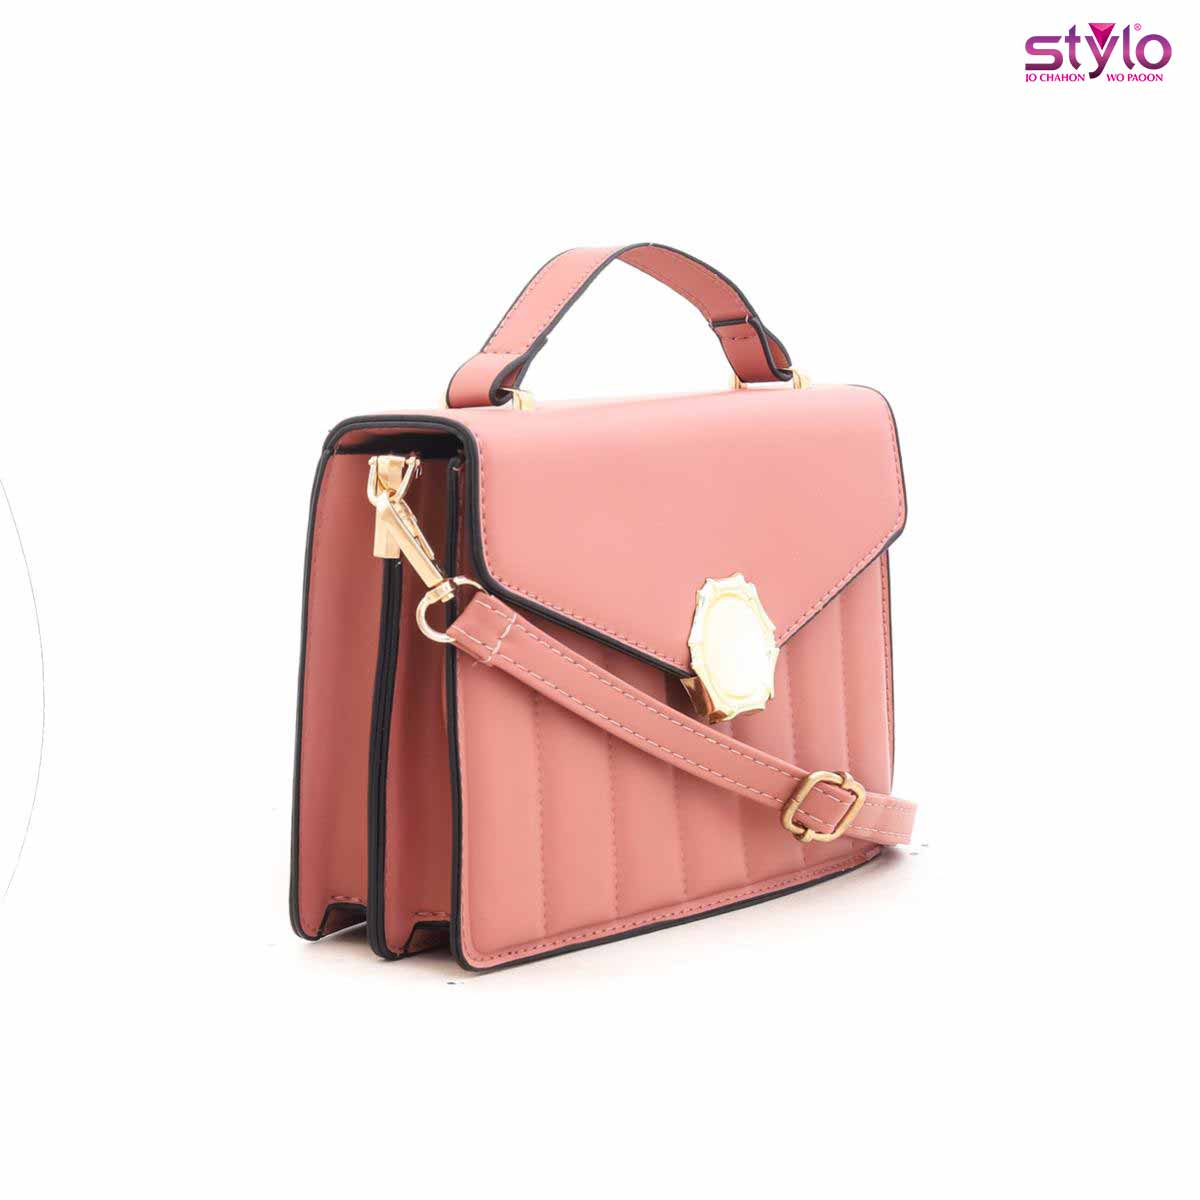 Styli Shoulder Bag with Magnetic Closure & Adjustable shoulder Strap For Women (Pink, OS)